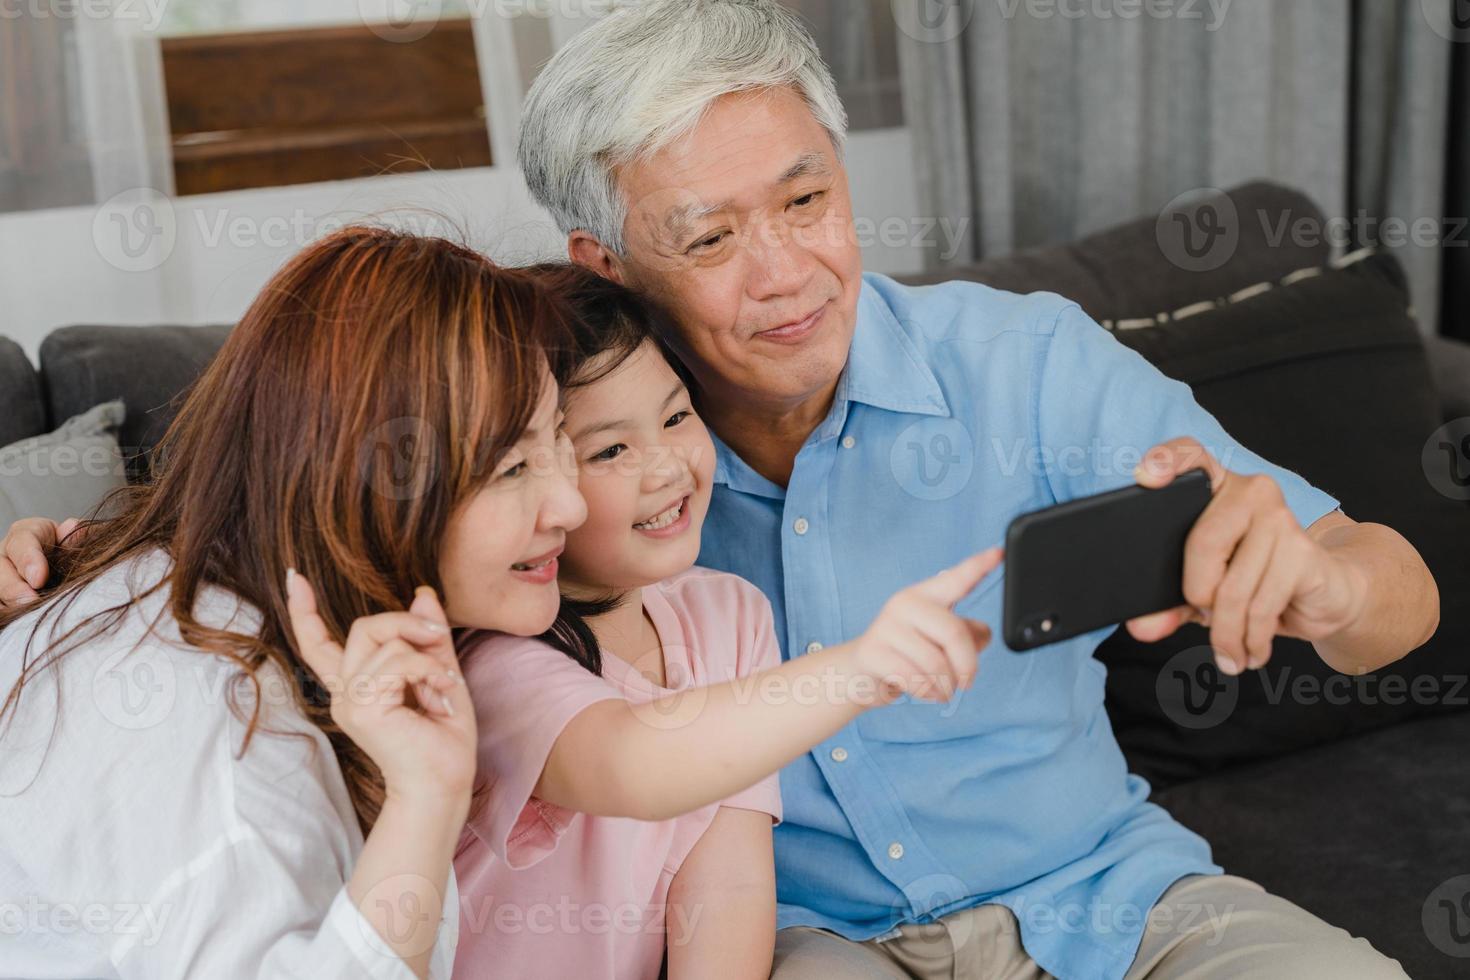 grands-parents asiatiques selfie avec petite-fille à la maison. chinois senior, grand-père et grand-mère heureux de passer du temps en famille à se détendre à l'aide d'un téléphone portable avec une jeune fille allongée sur un canapé dans le concept du salon. photo